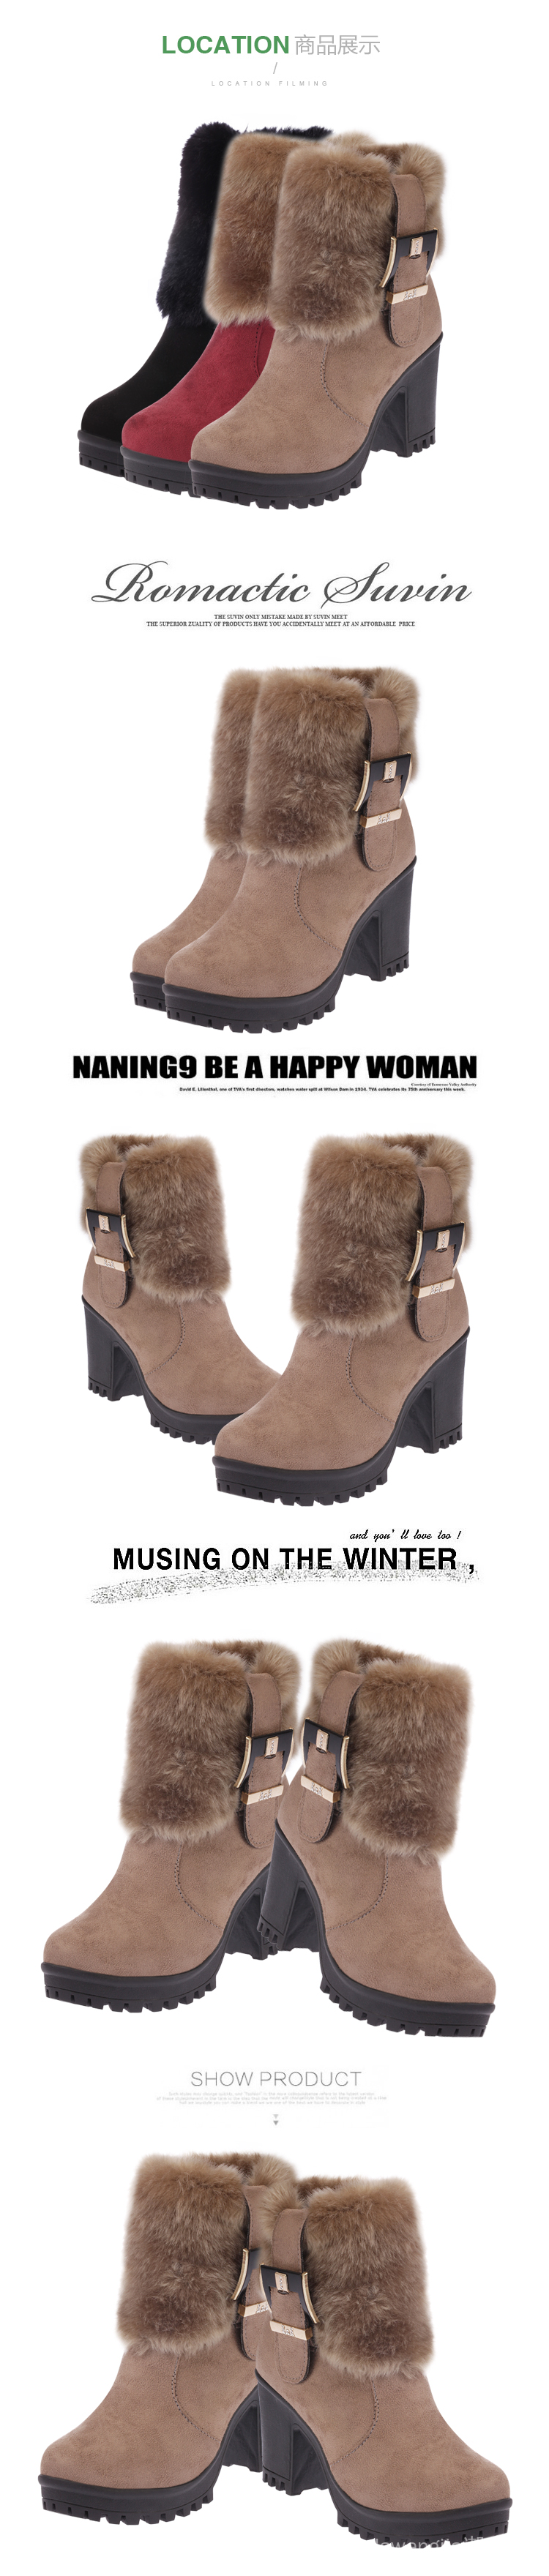 Giày bốt da lộn cao gót ống ngắn phối lông thời trang mùa đông 2020 cho nữ